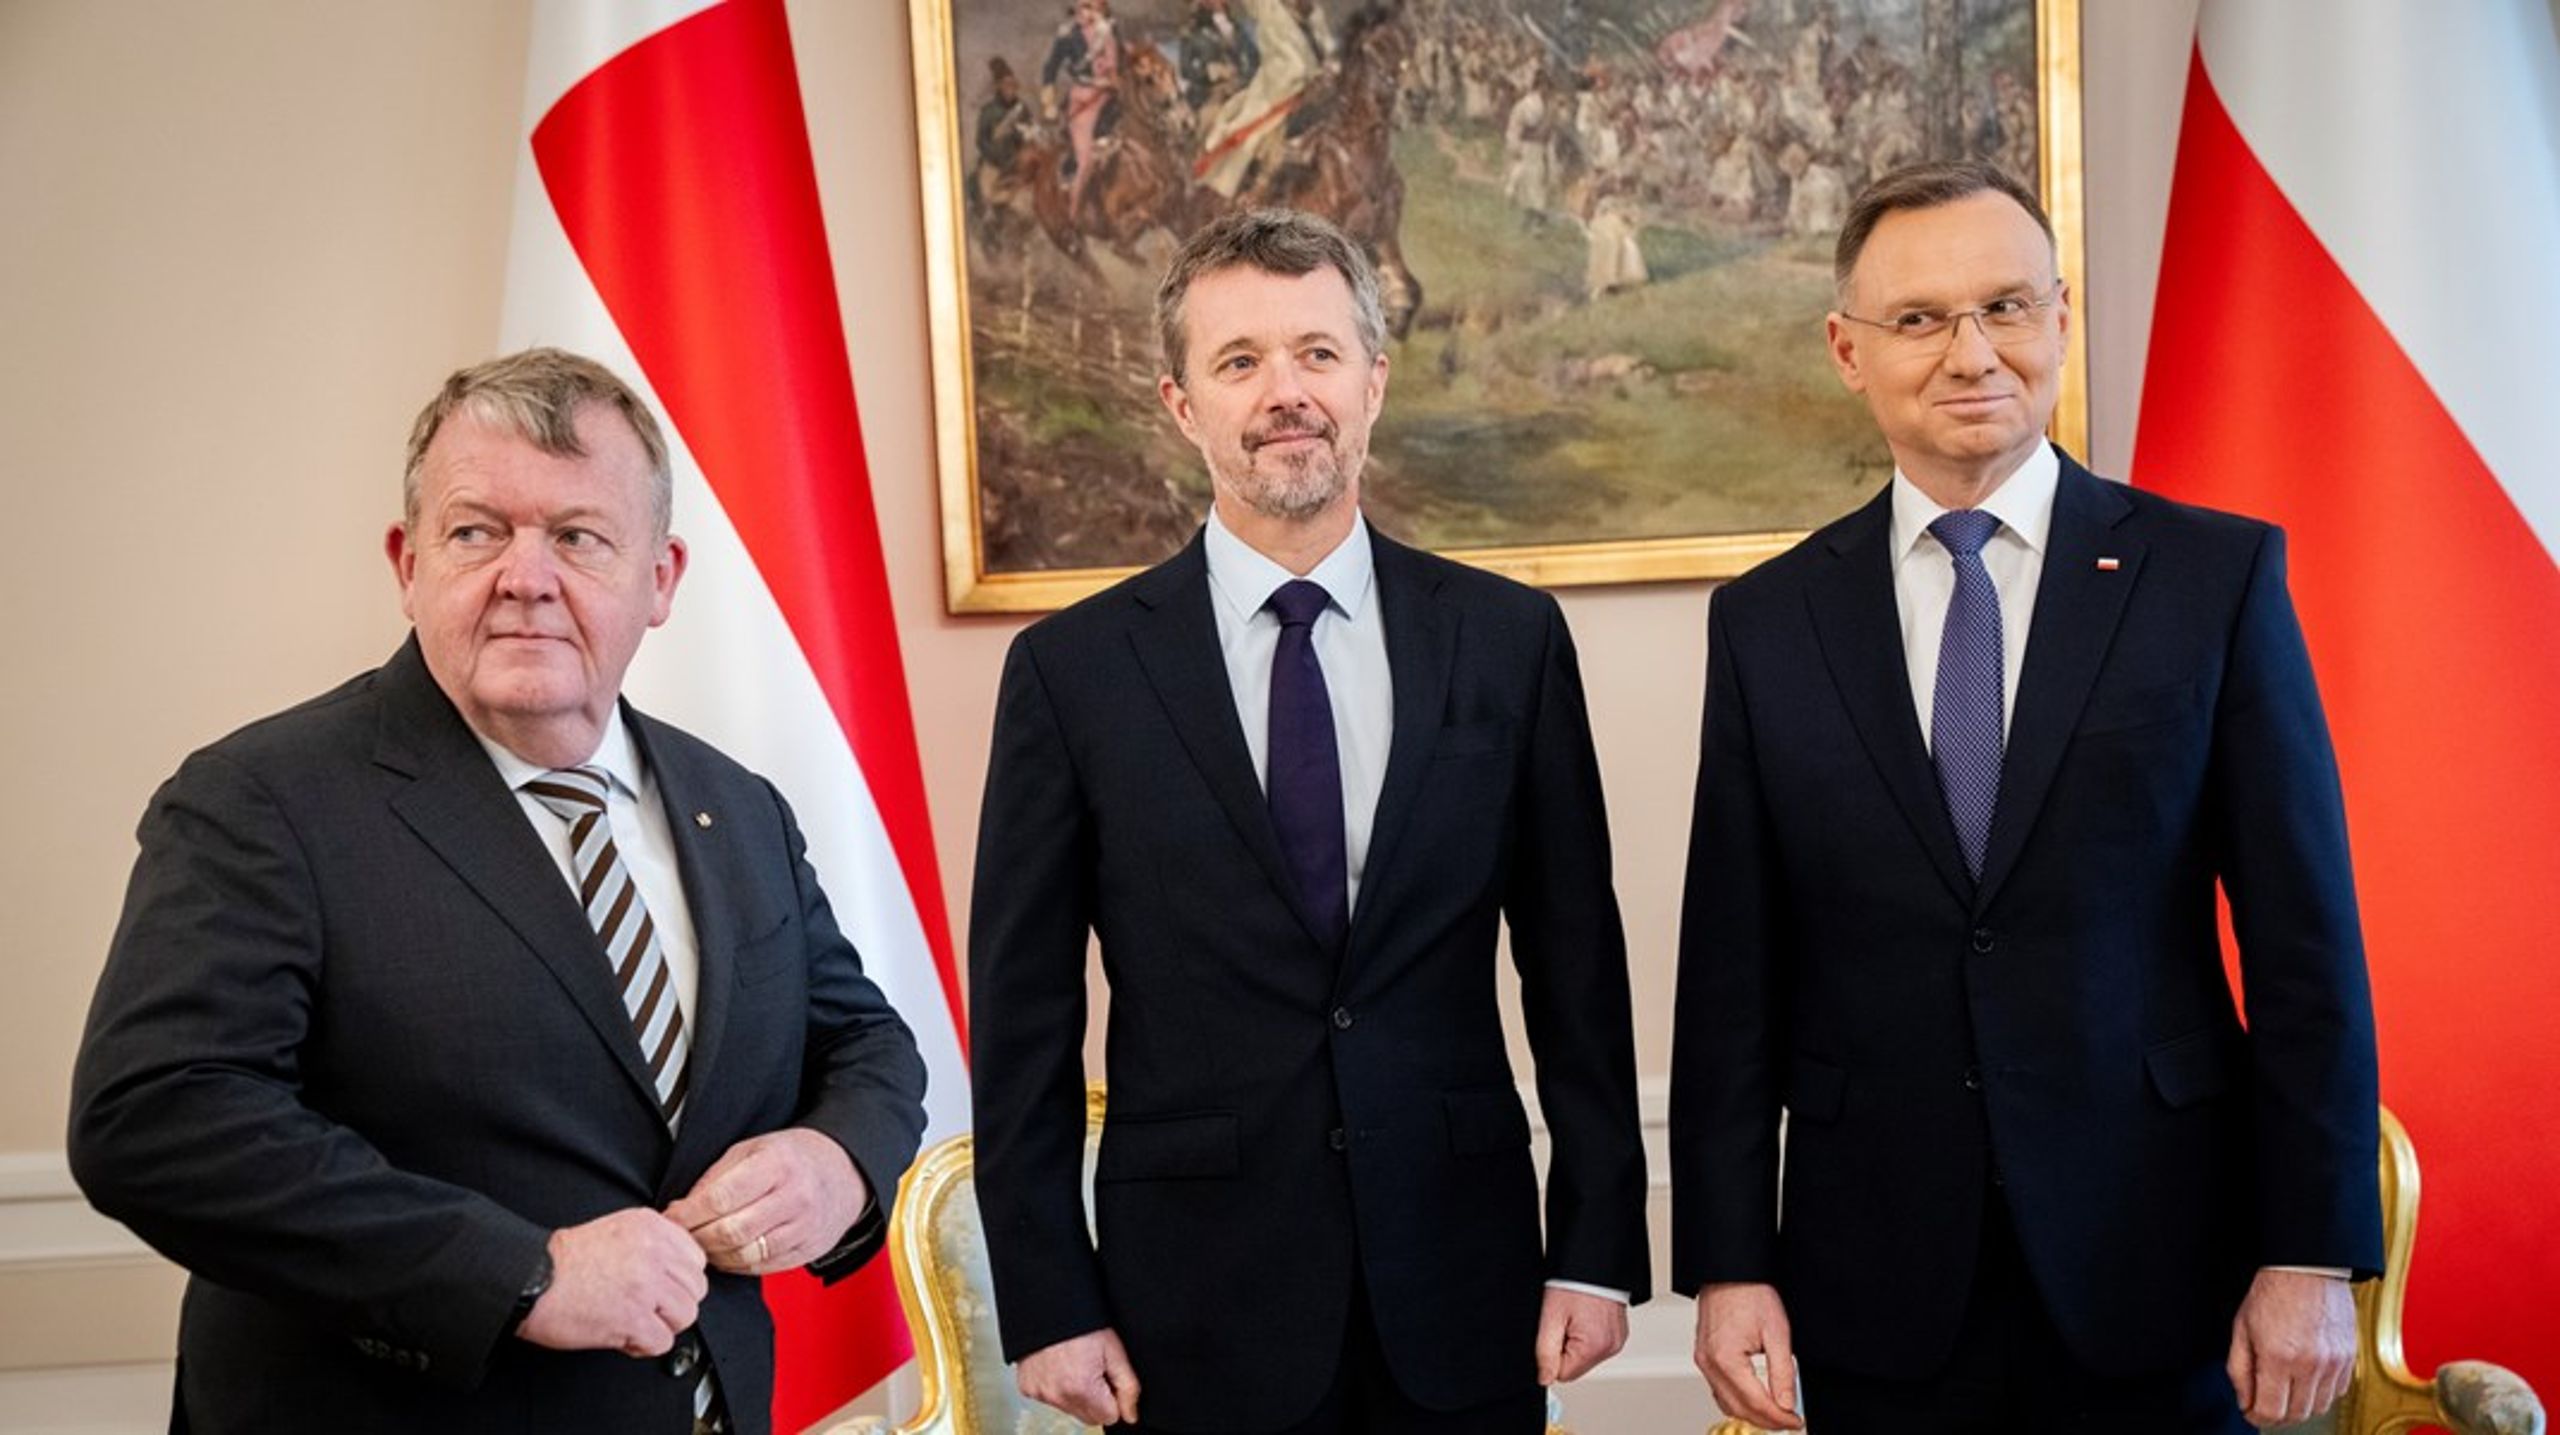 Udenrigsminister Lars Løkke Rasmussen og kong Frederik mødes Polens med Polens præsident Andrzej Duda&nbsp;i præsidentpaladset i Warszawa under et erhvervsfremstød i slutningen af januar. Arkivfoto.&nbsp;